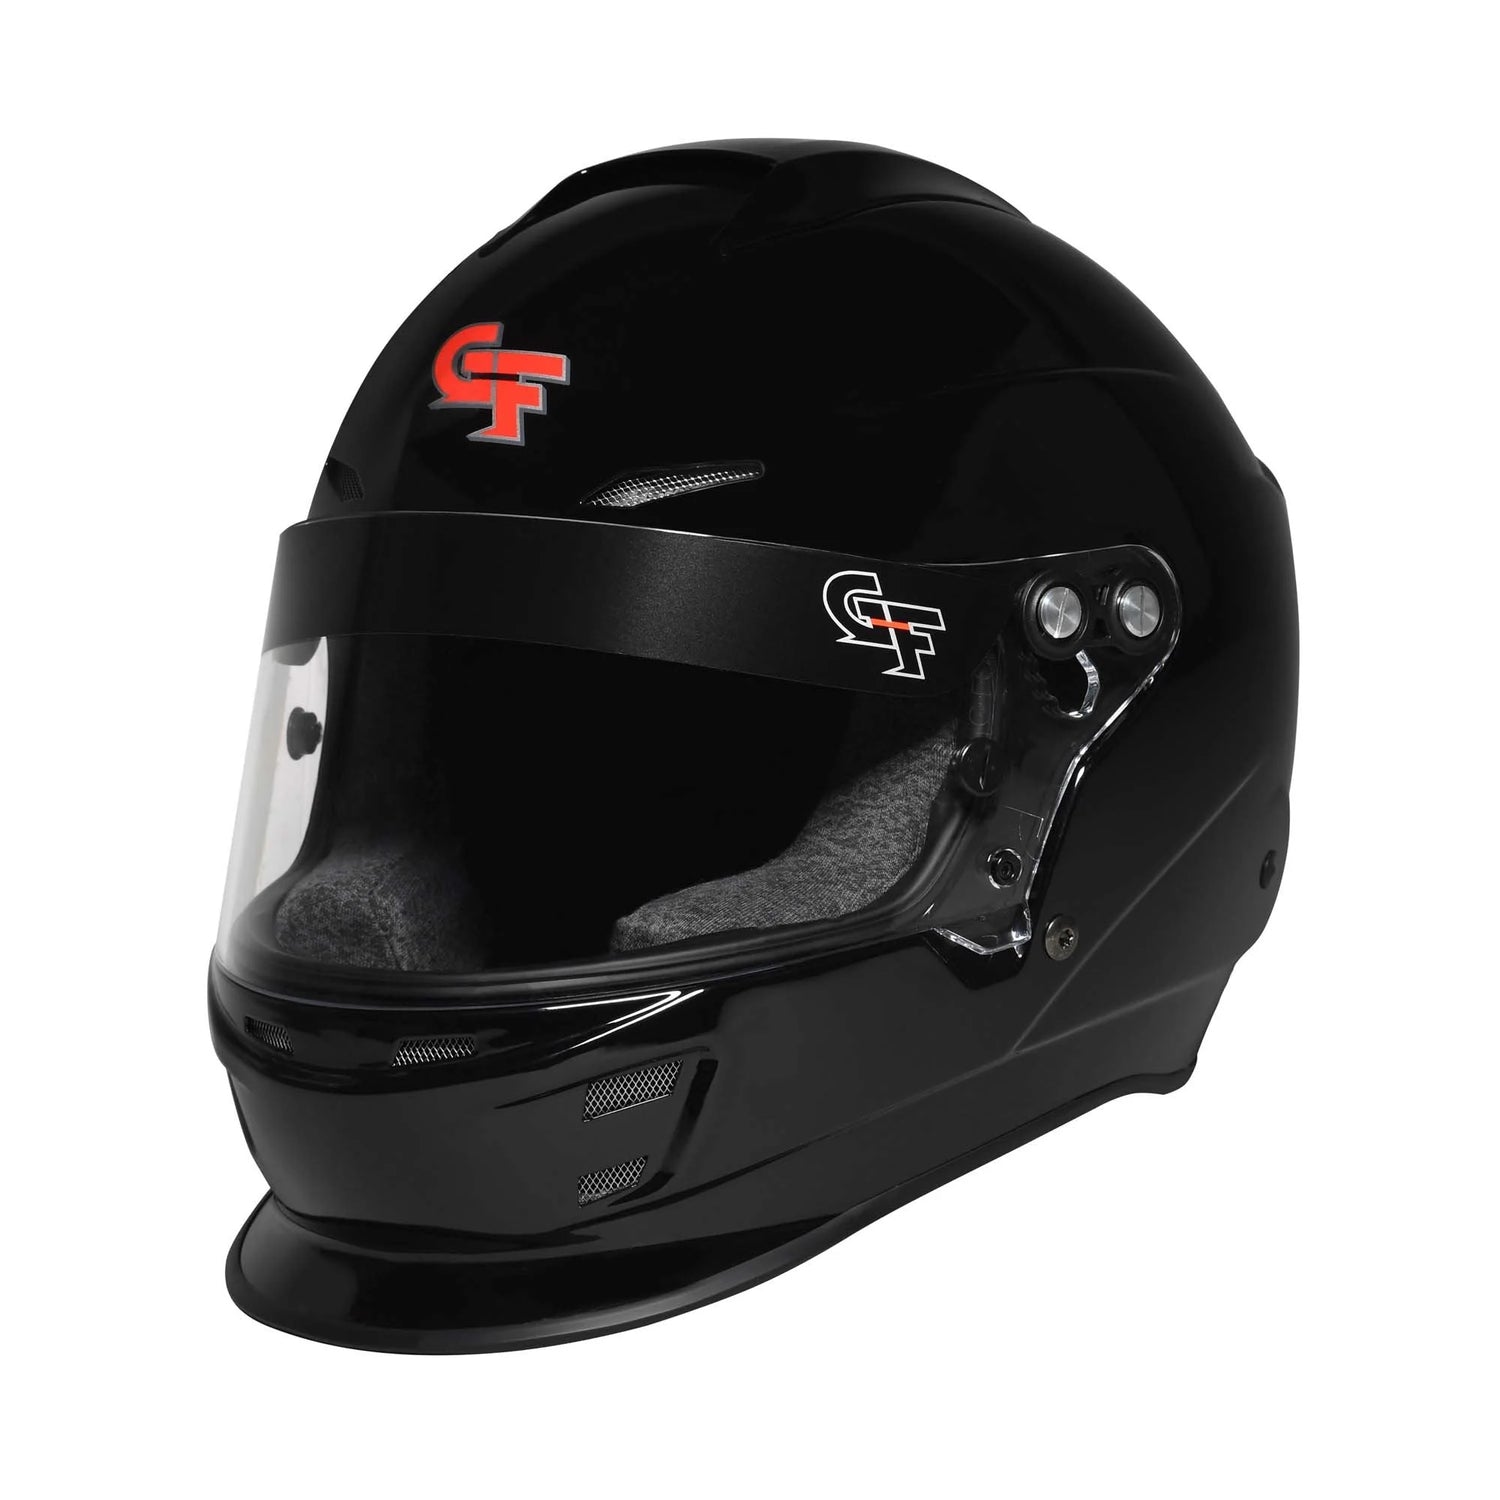 Racing Helmets under $500